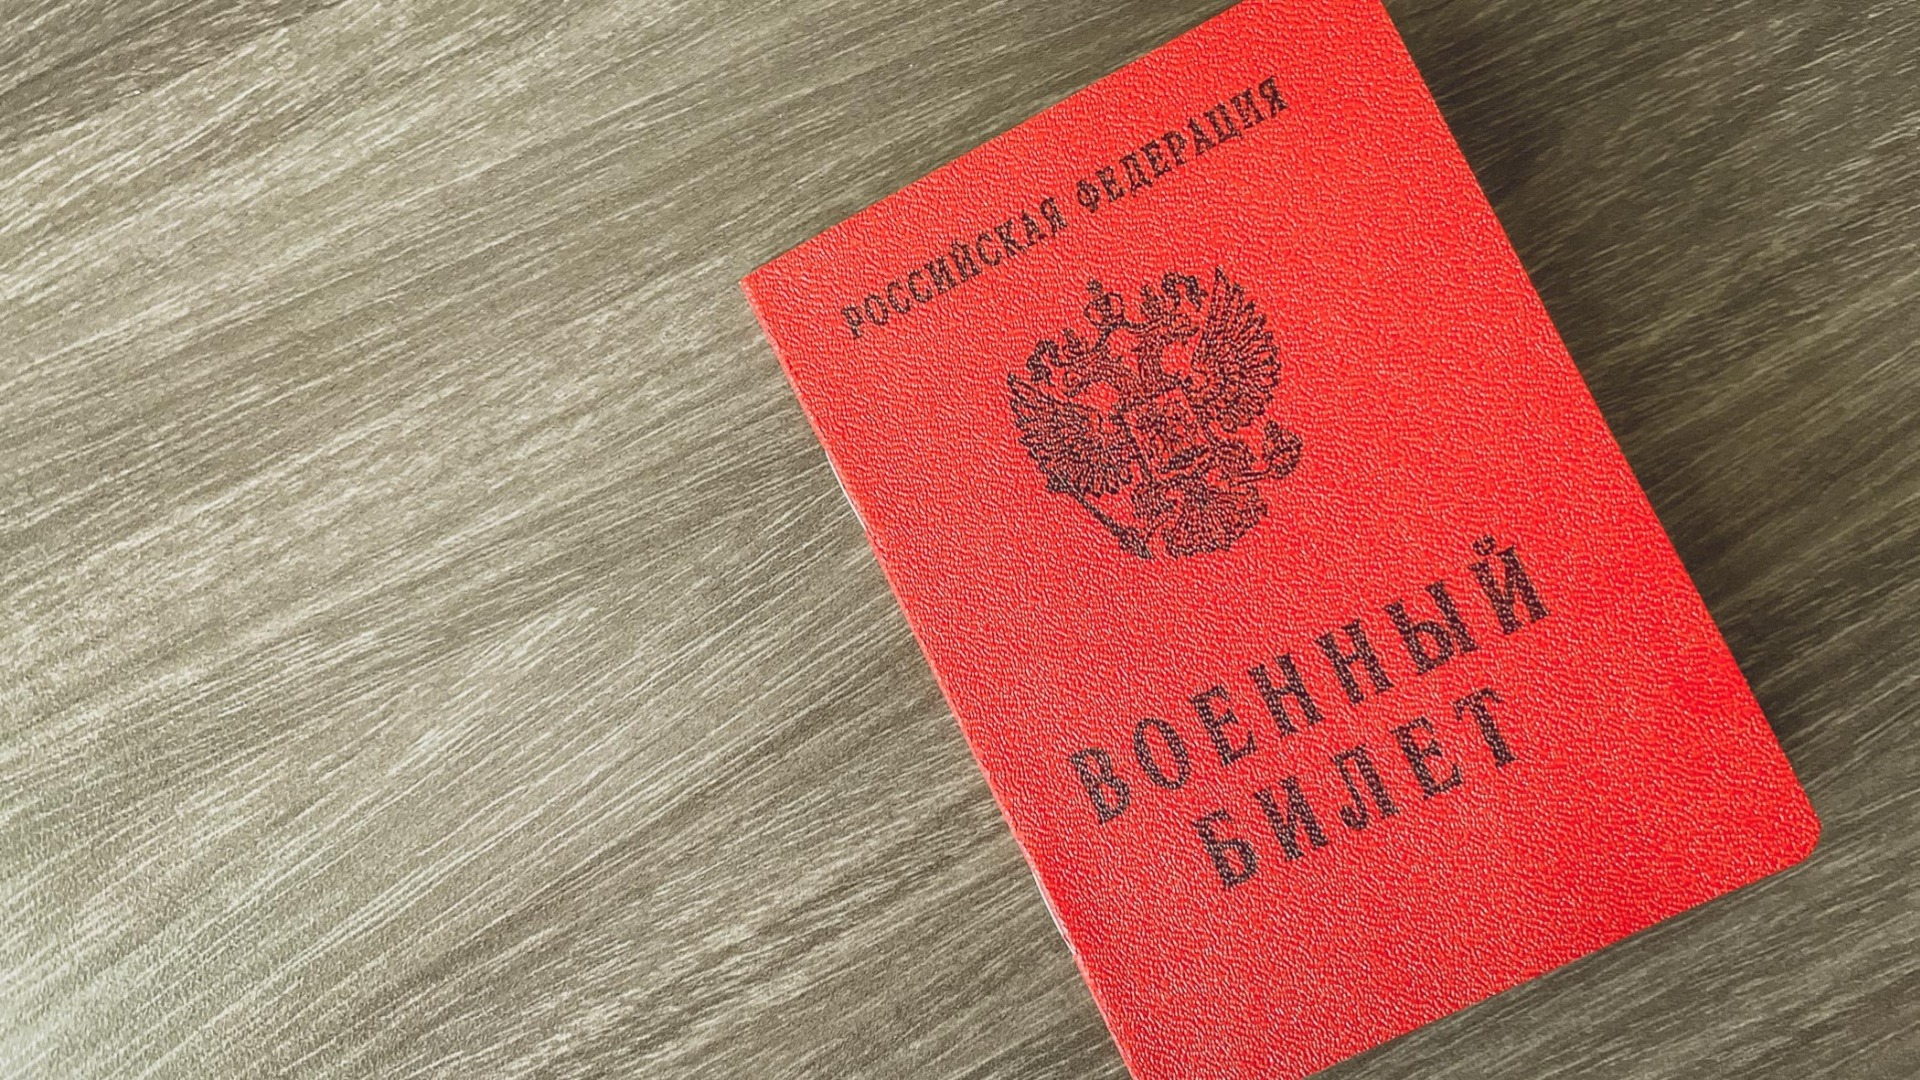 В Госдуму внесен проект о лишении уклонистов российского гражданства 